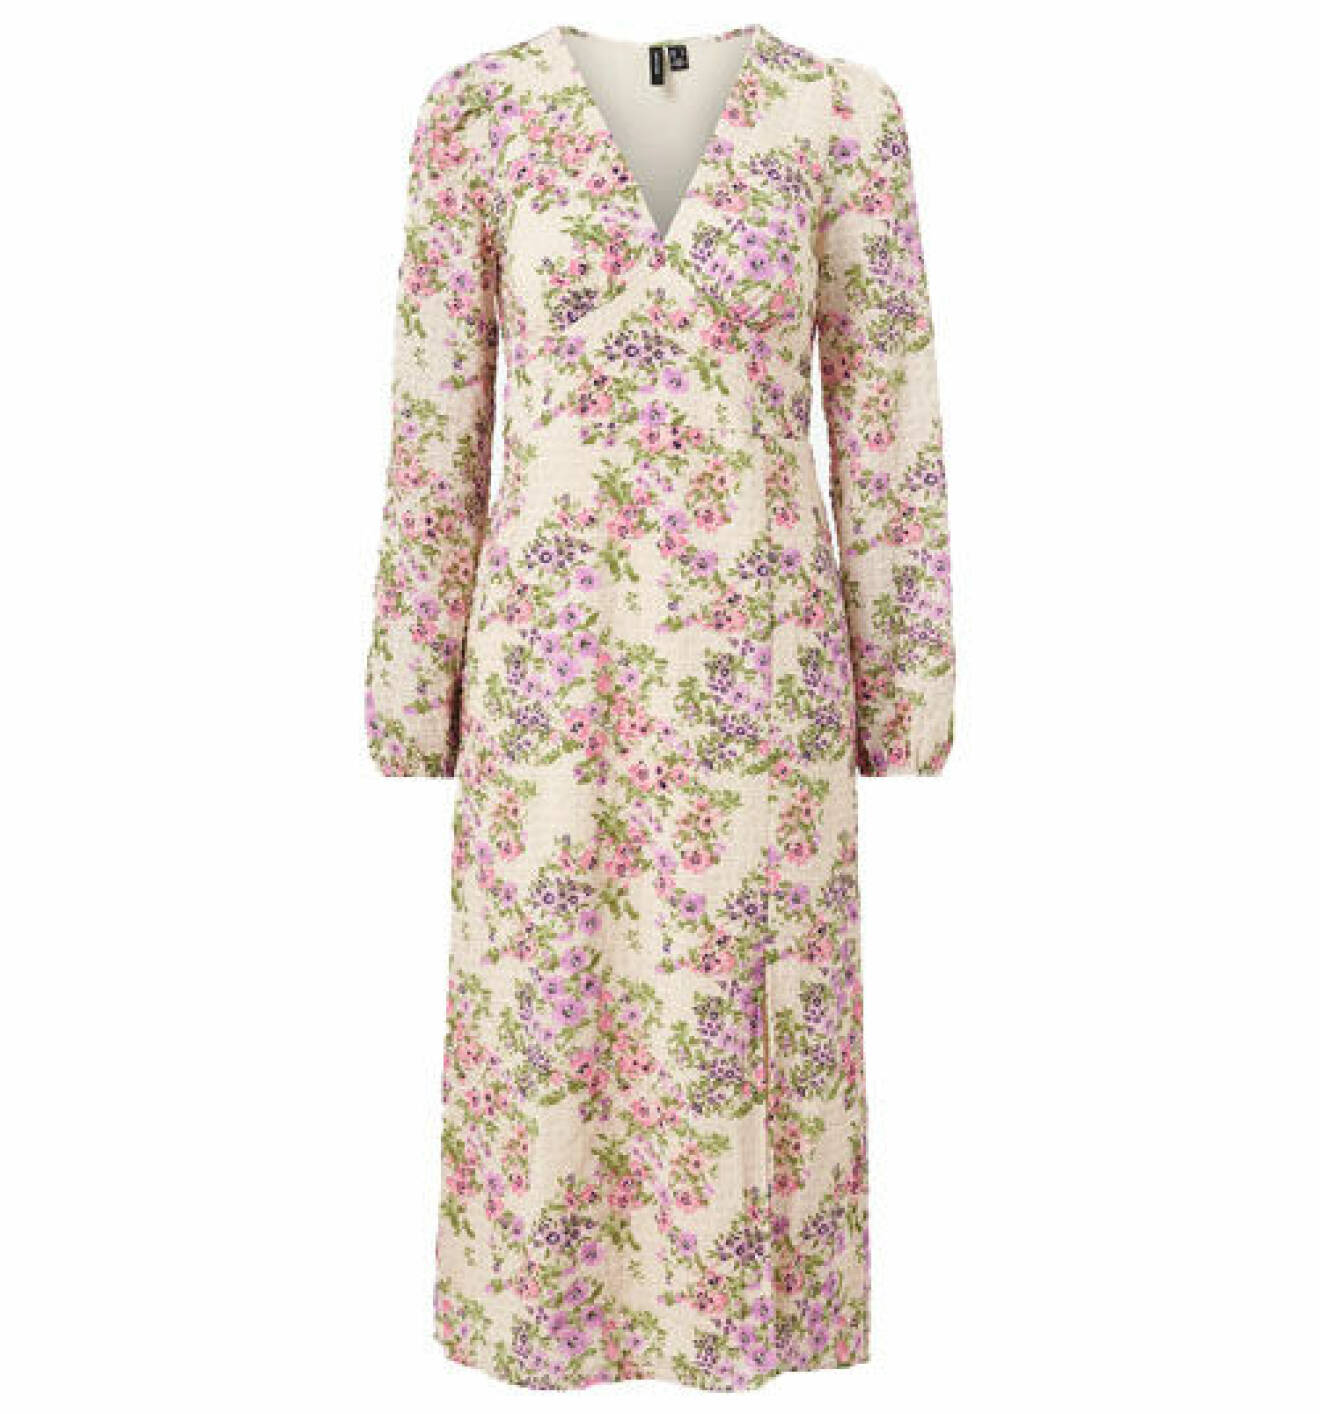 Lila och rosa blommig klänning med v-ringning och långa ärmar från Vero Moda